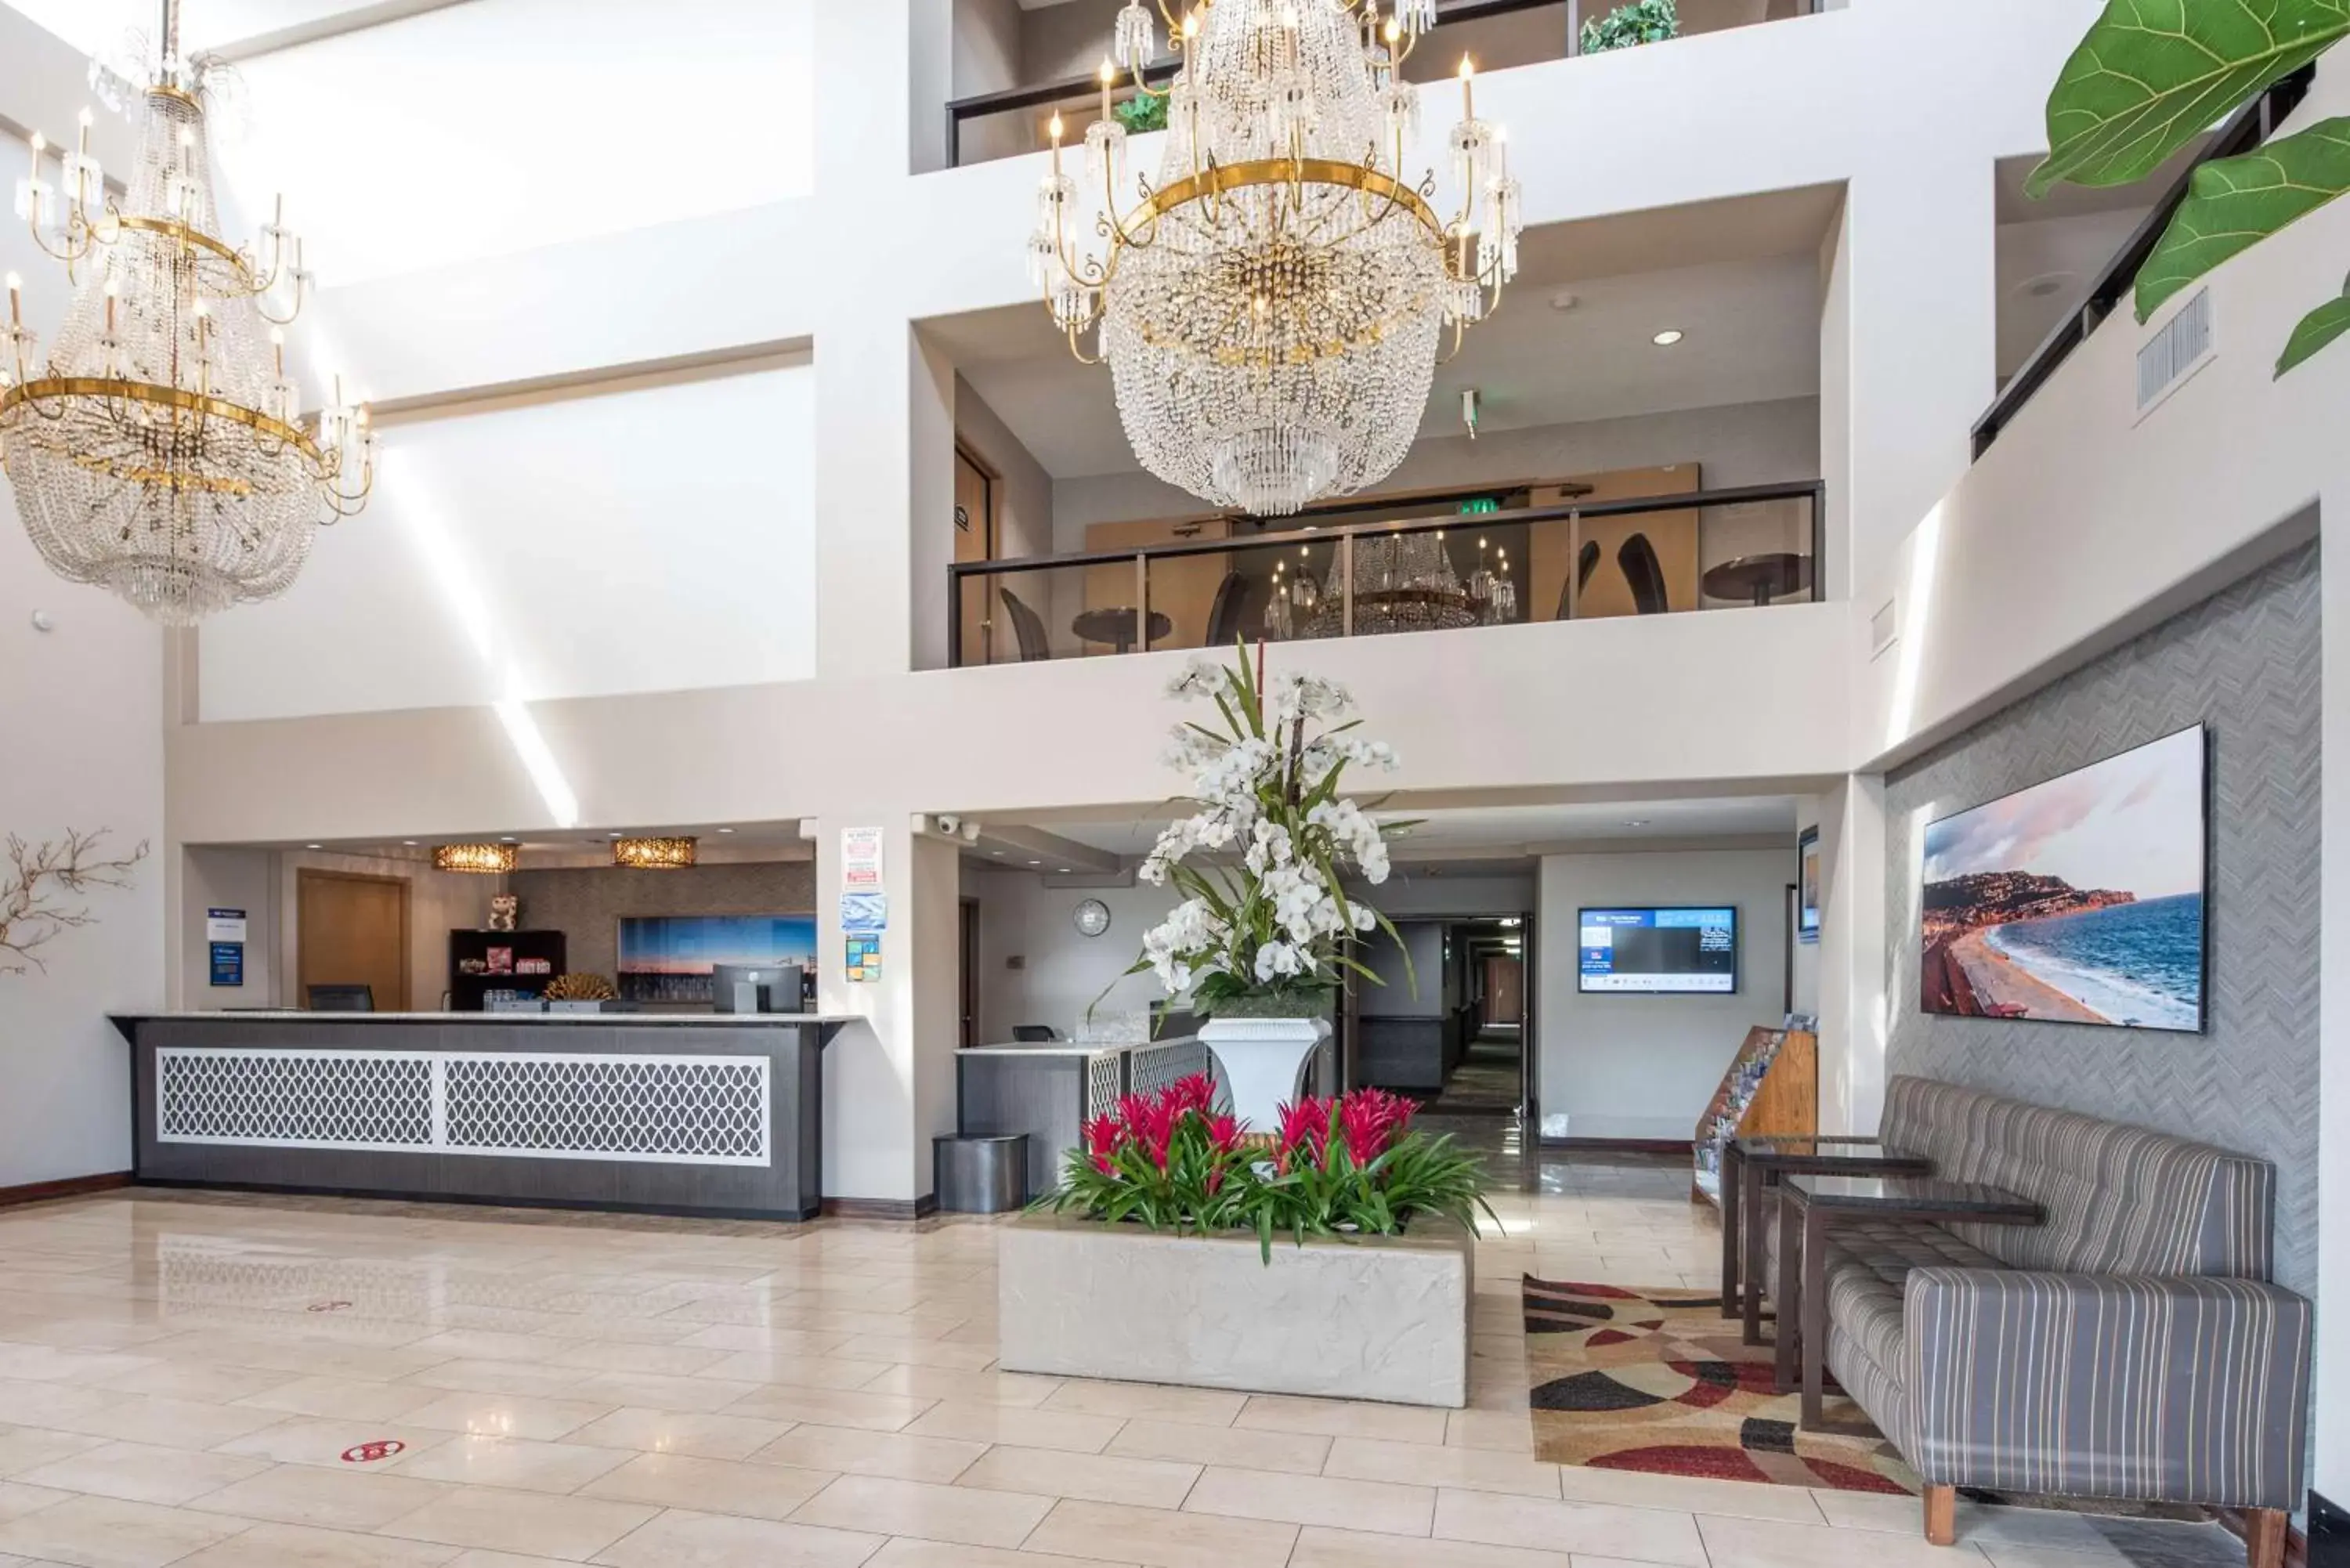 Lobby or reception, Lobby/Reception in Best Western Plus Redondo Beach Inn